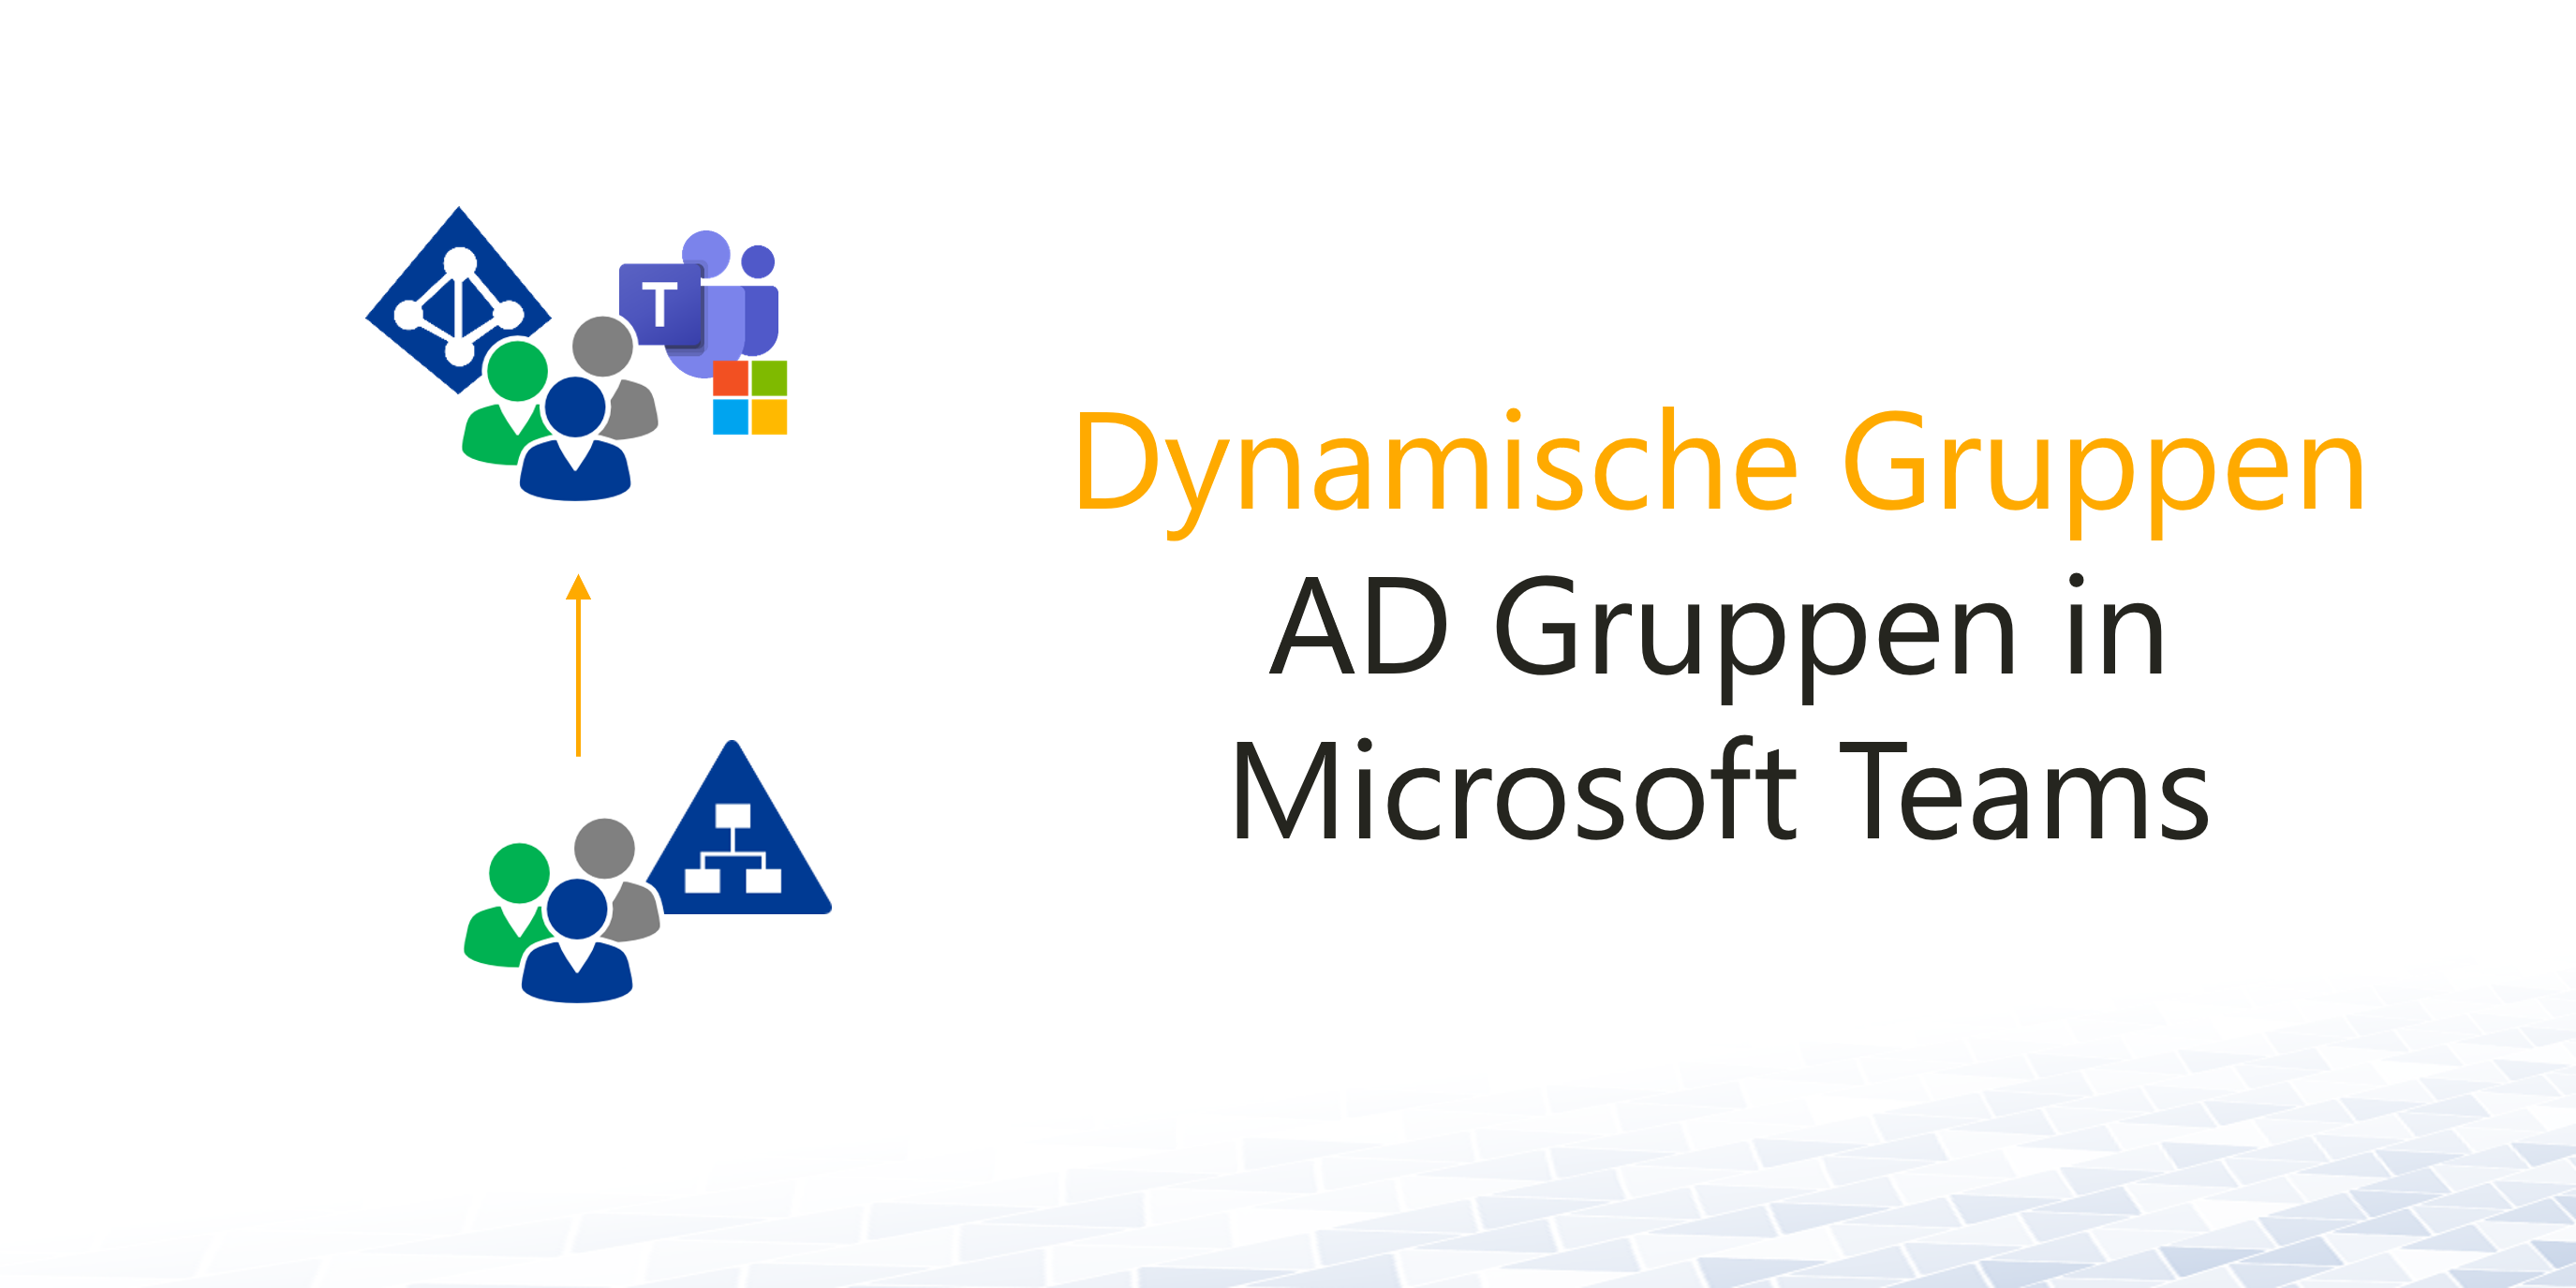 AD-Gruppen in Microsoft Teams verwenden - Dynamische Gruppen in der Praxis